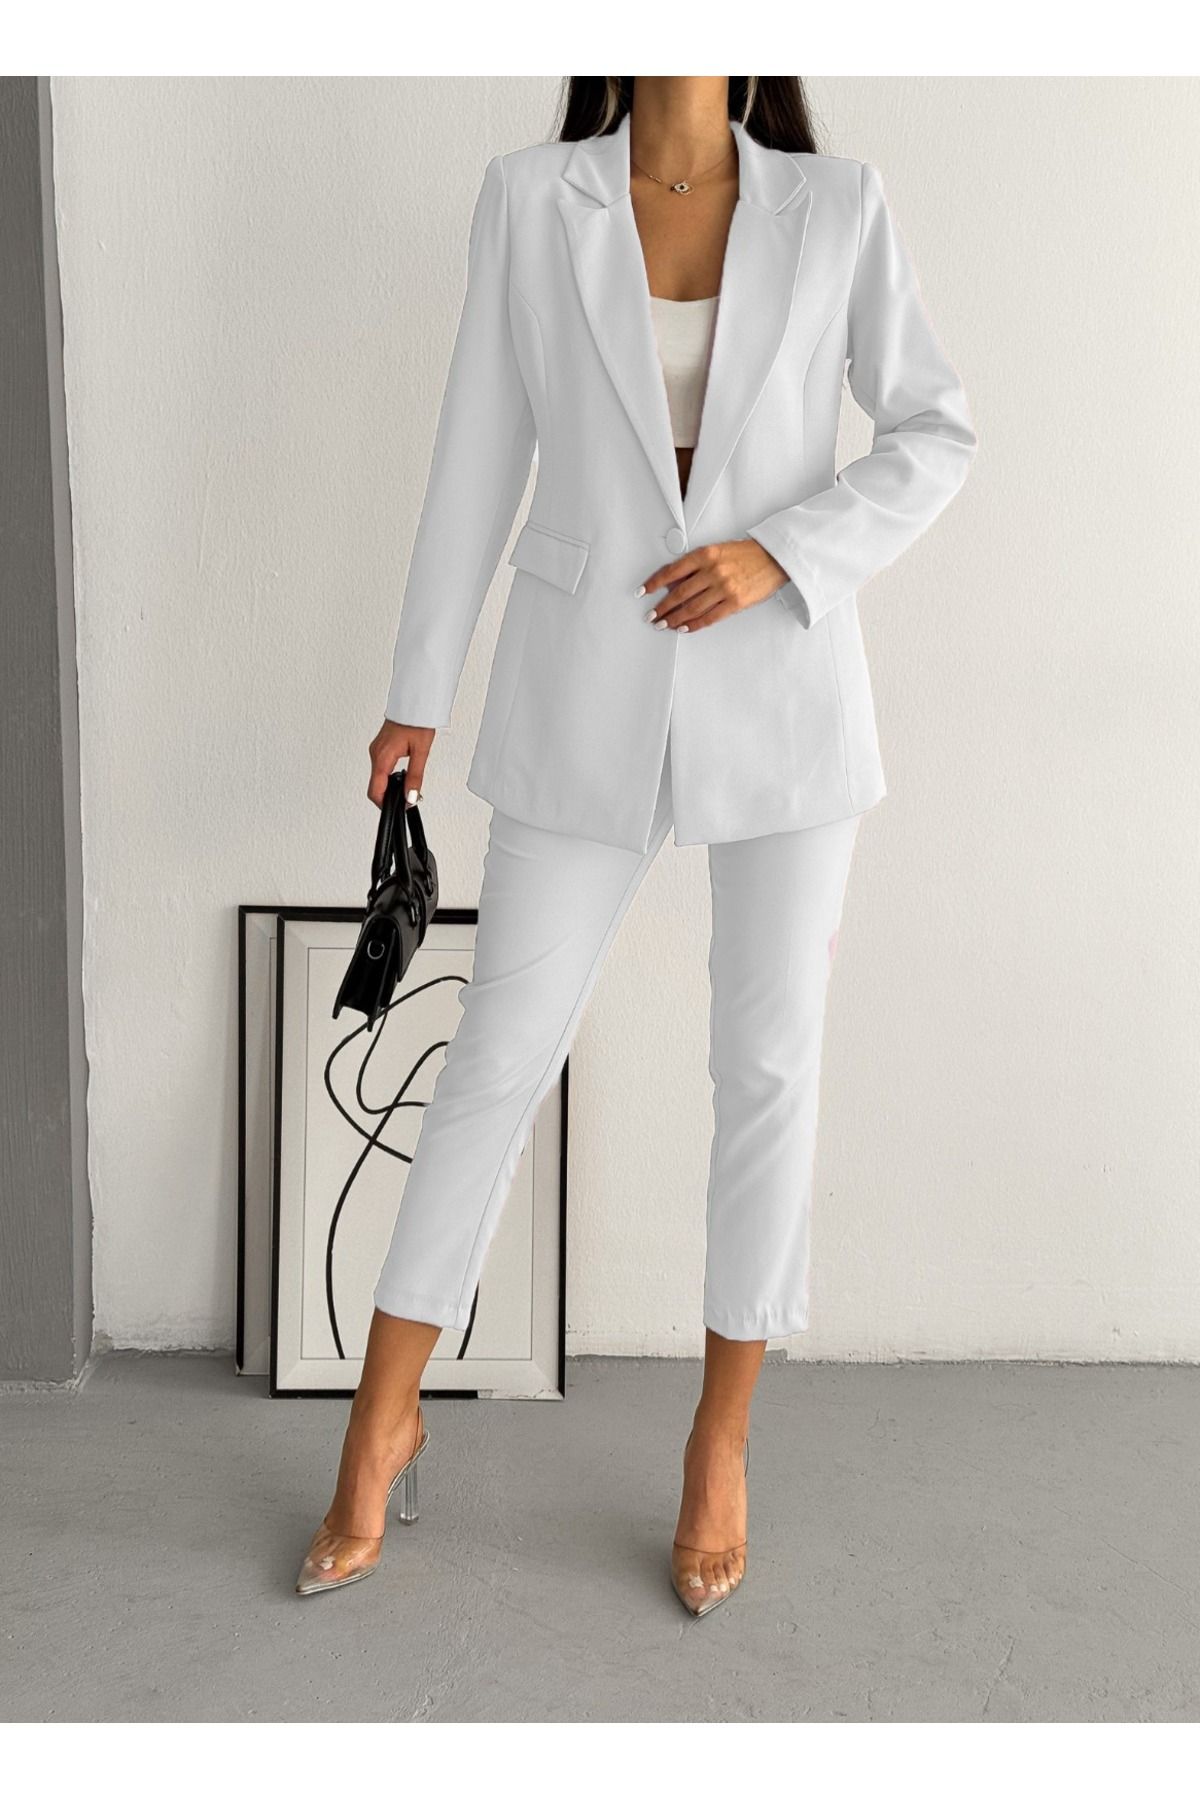 diaves Beyaz Tek Düğme Blazer Ceket Havuç Pantolon Takım Elbise